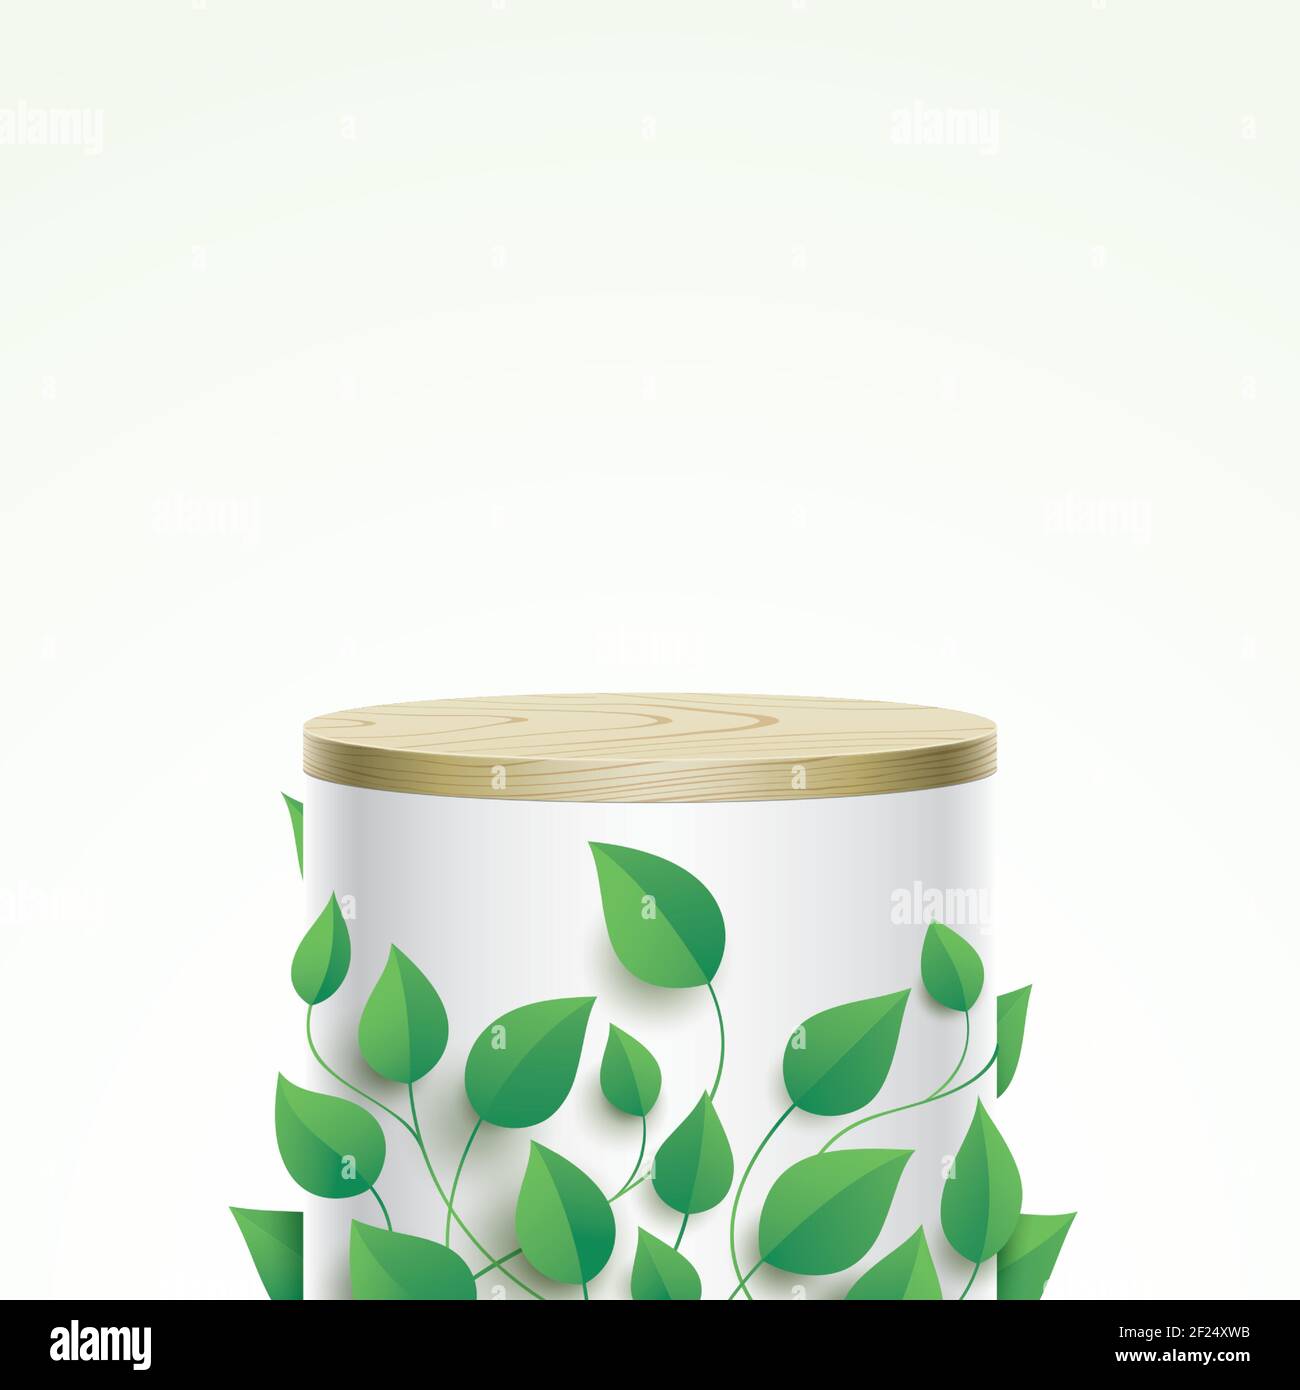 Una escena ecológica abstracta con forma de tubo muestra etapa cubierta de hojas verdes. Forma ovalada estética columna blanca con cubierta de madera, y espacio libre para un objeto, producto, o colocación de texto. Ilustración del Vector